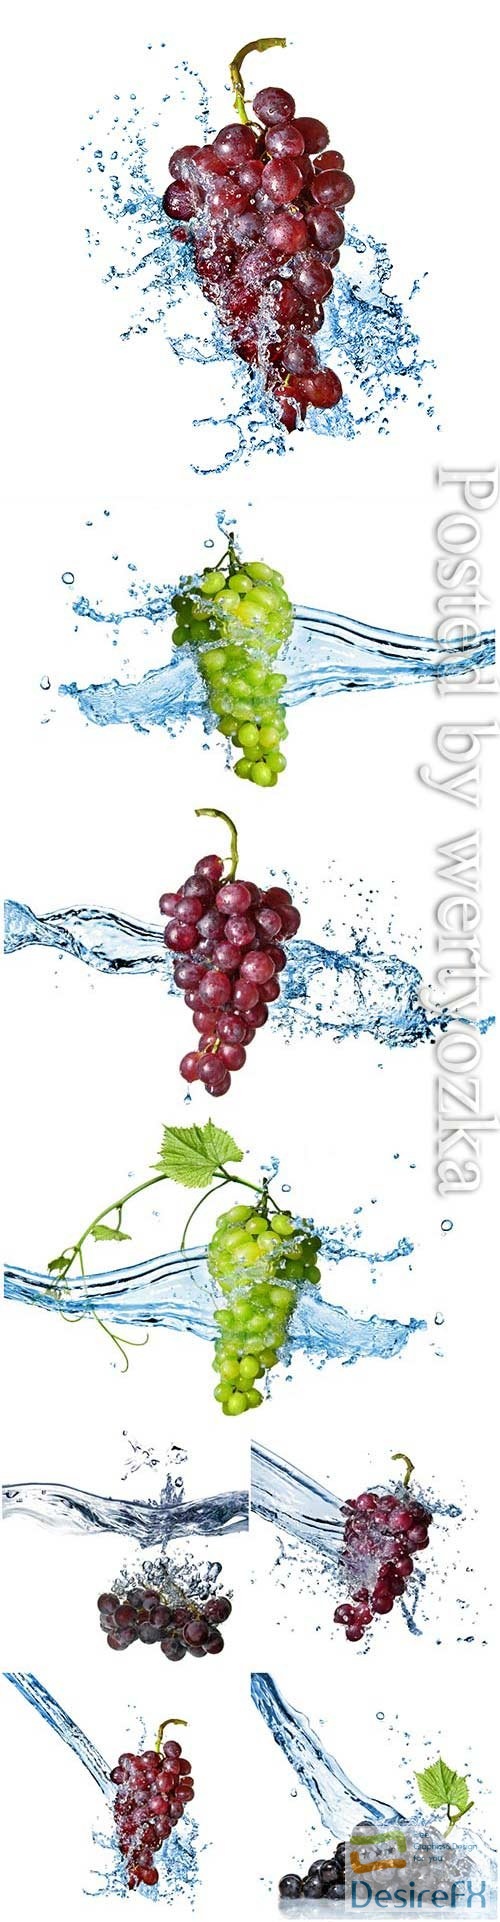 Grapes splashing water stock photo